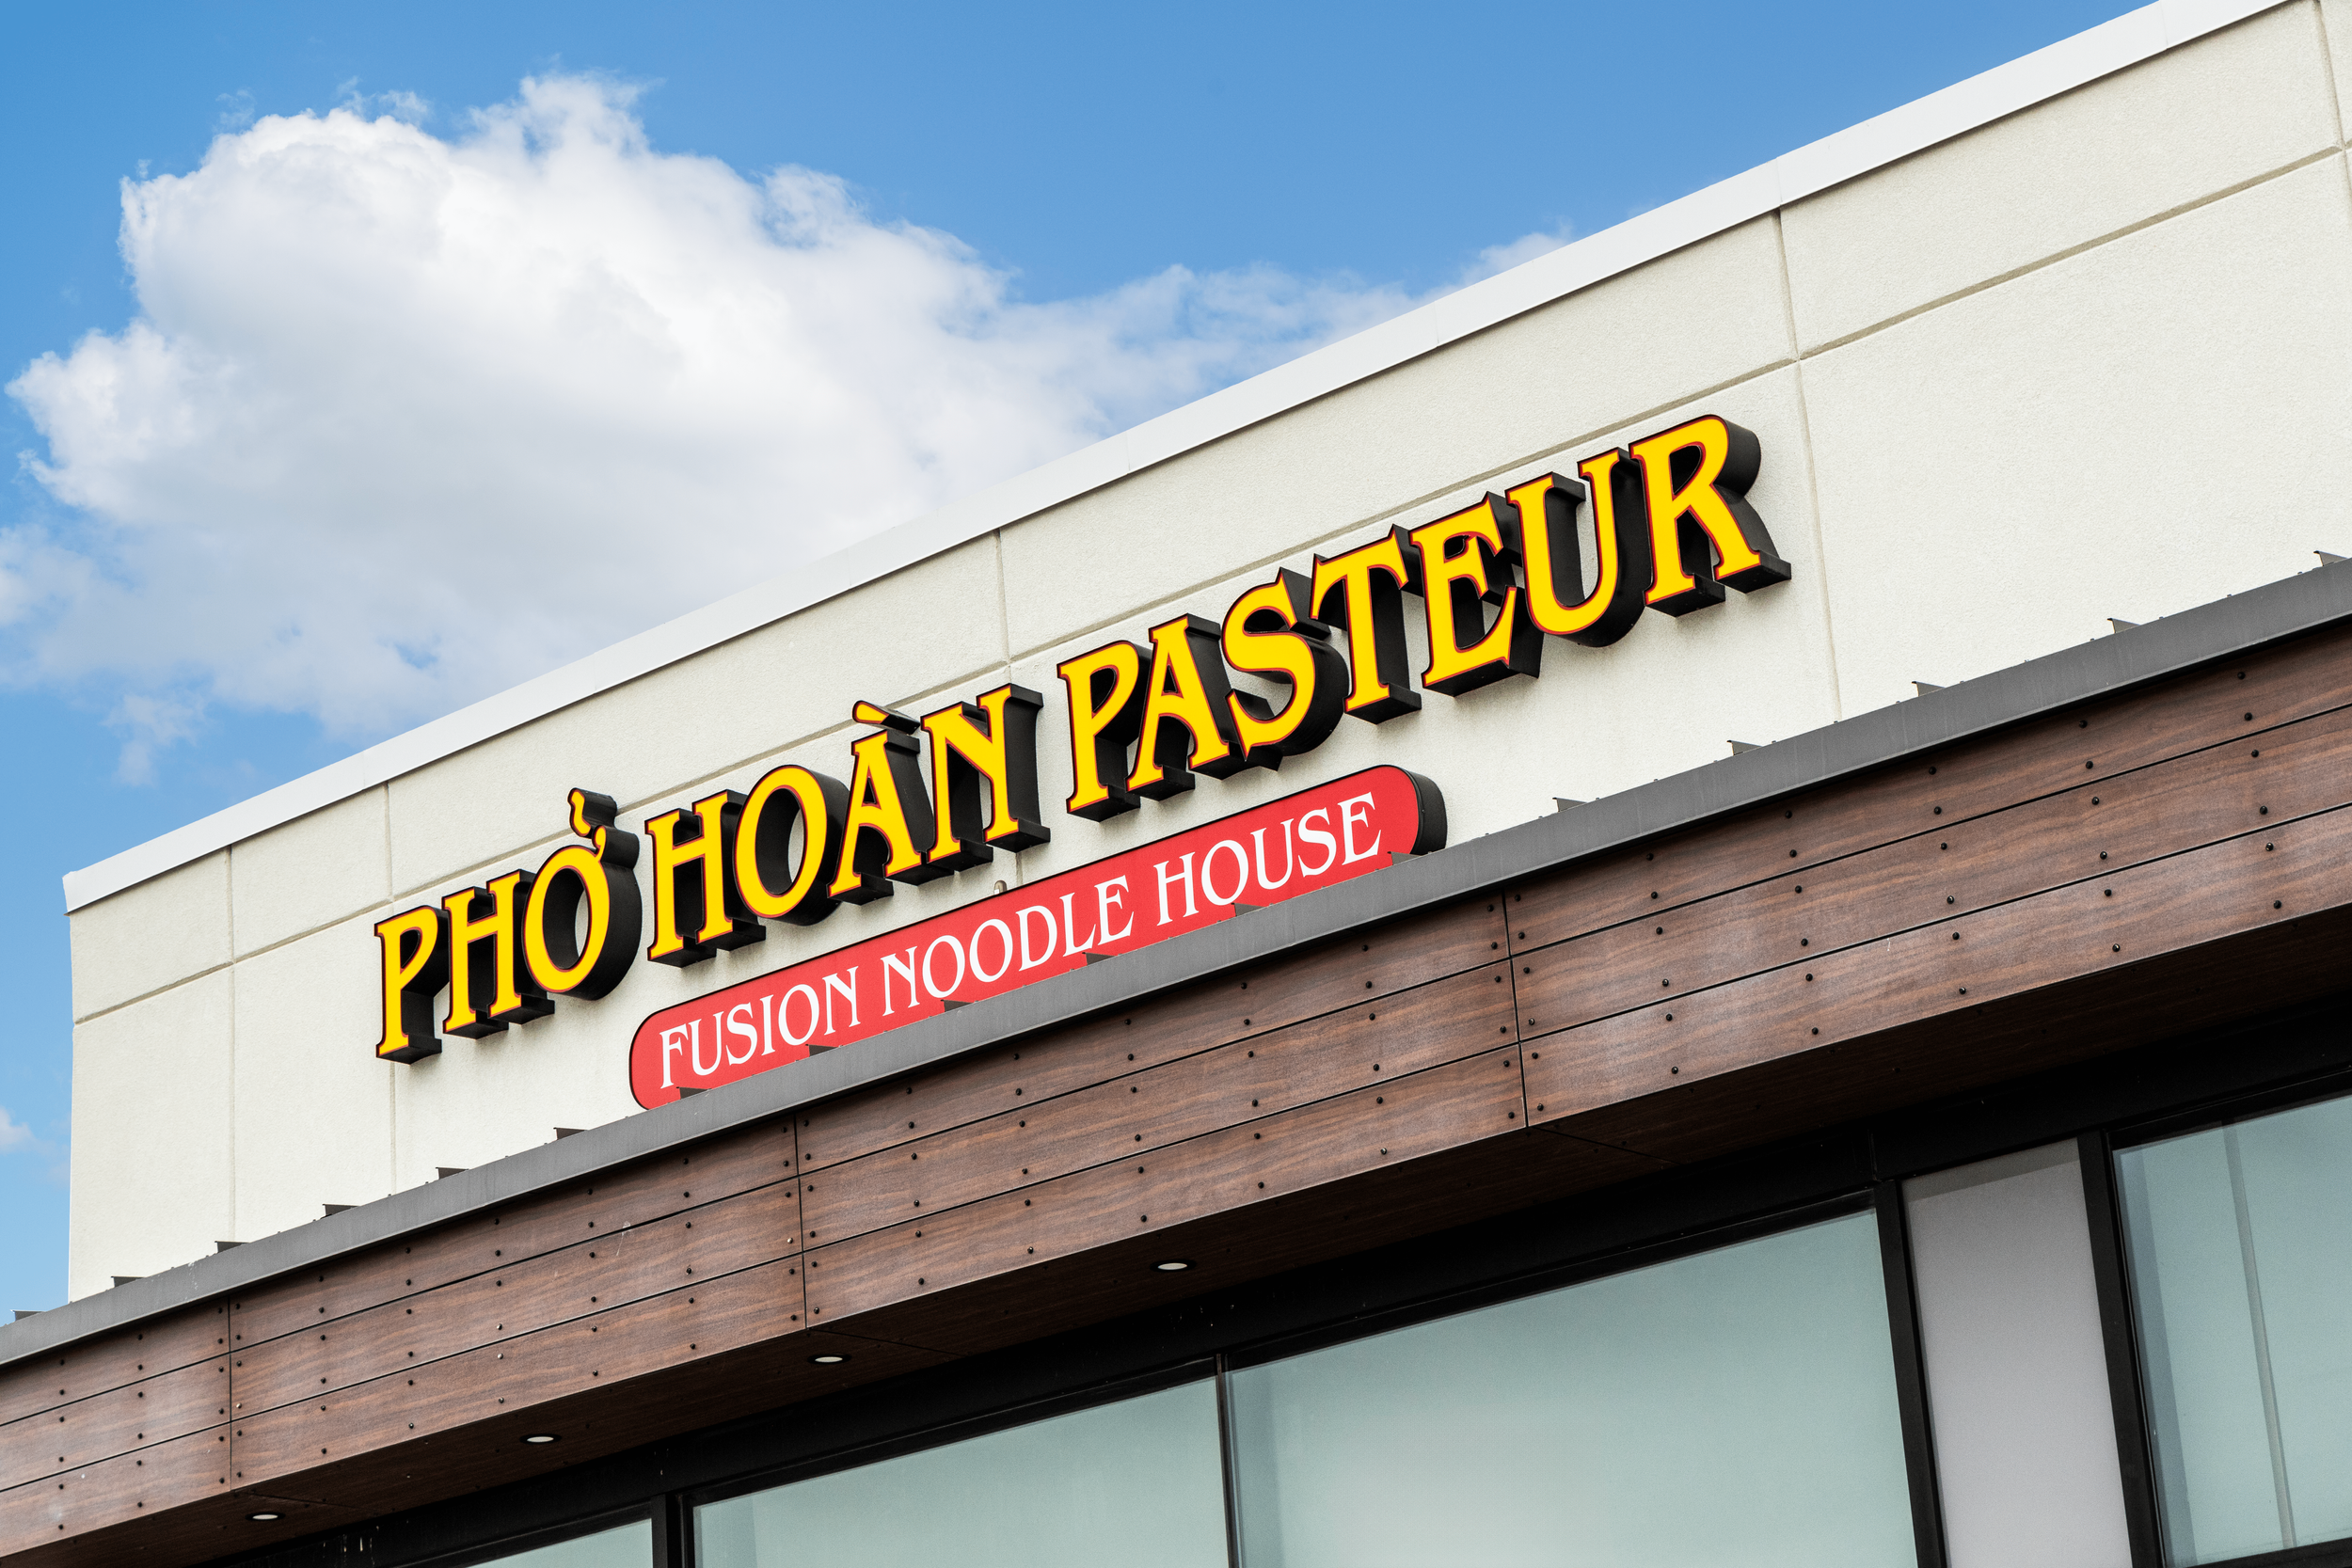 Pho Hoan Pasteur - Storefront sign-min.png